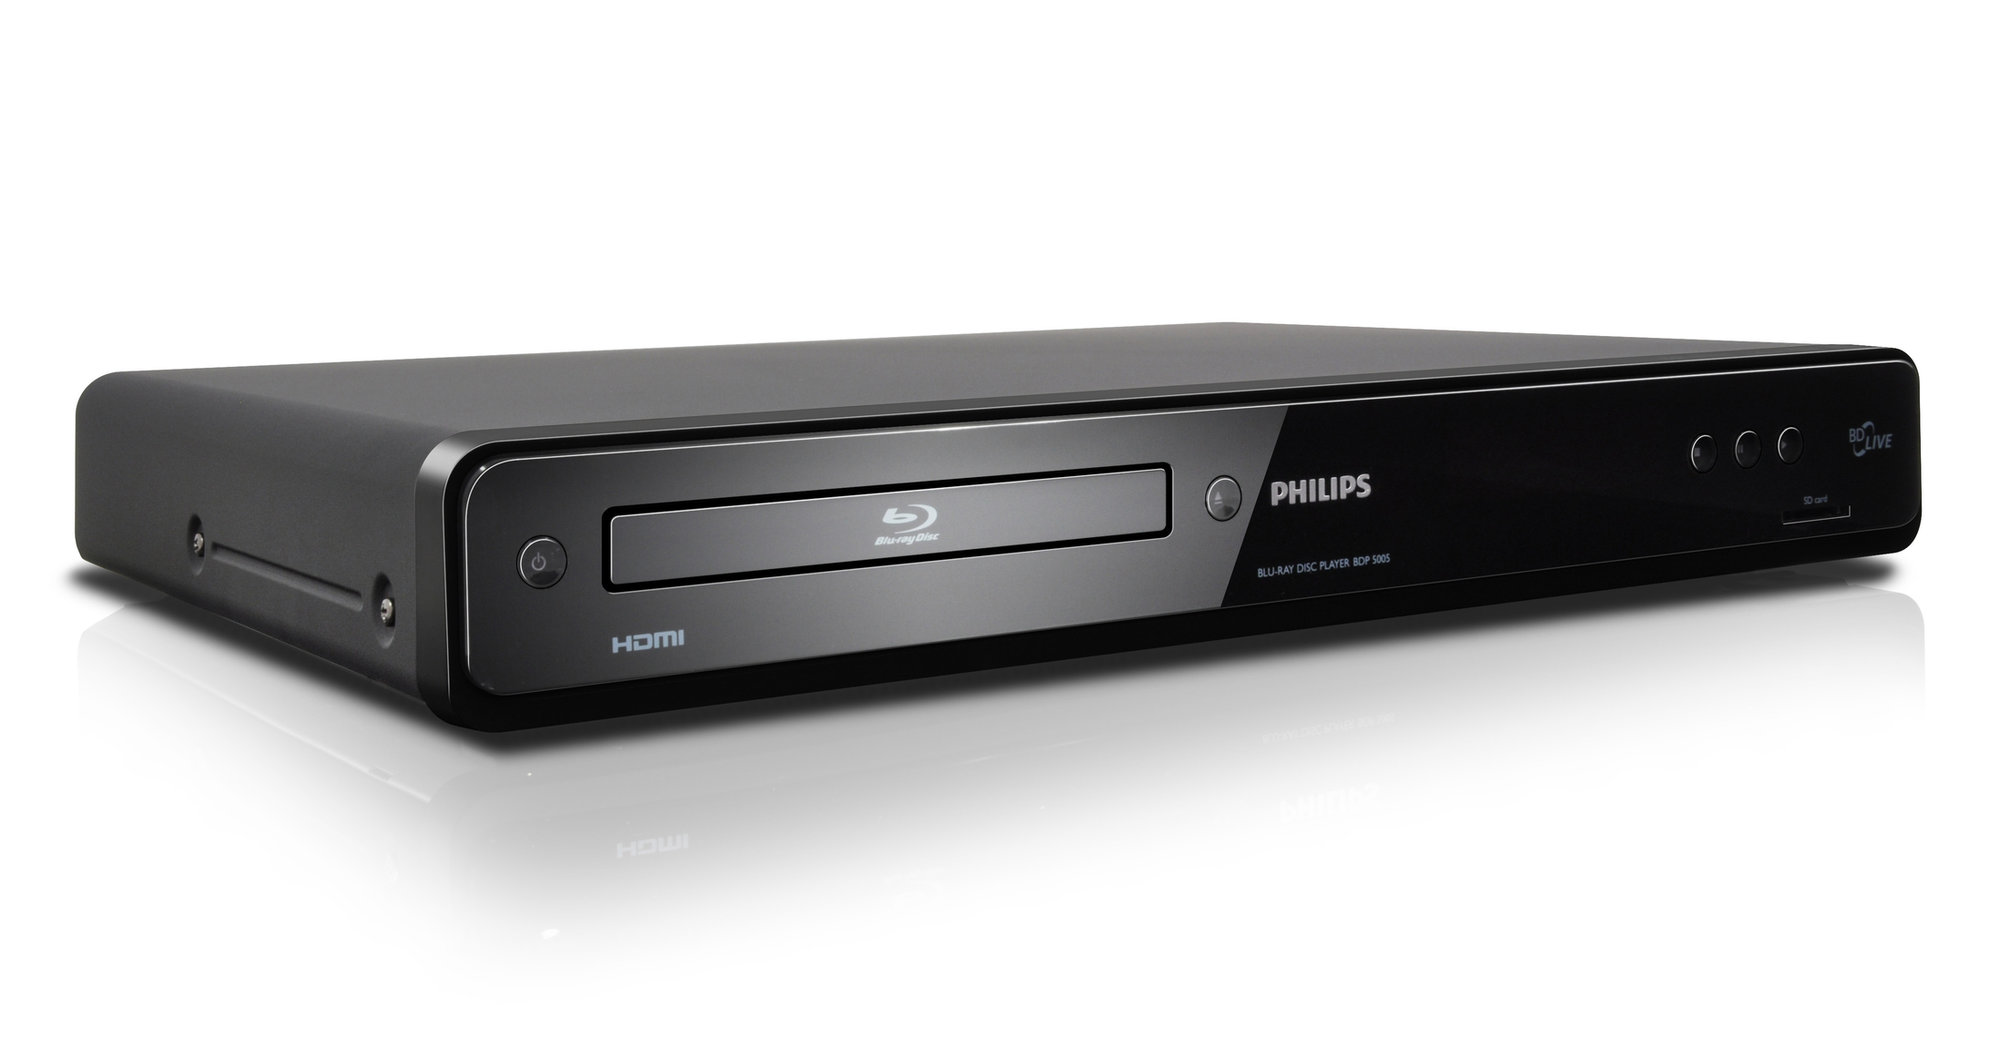 Det vil fortsatt stå Philips på Blu-ray-spillere, selv om virksomheten er solgt til japanske Funai.